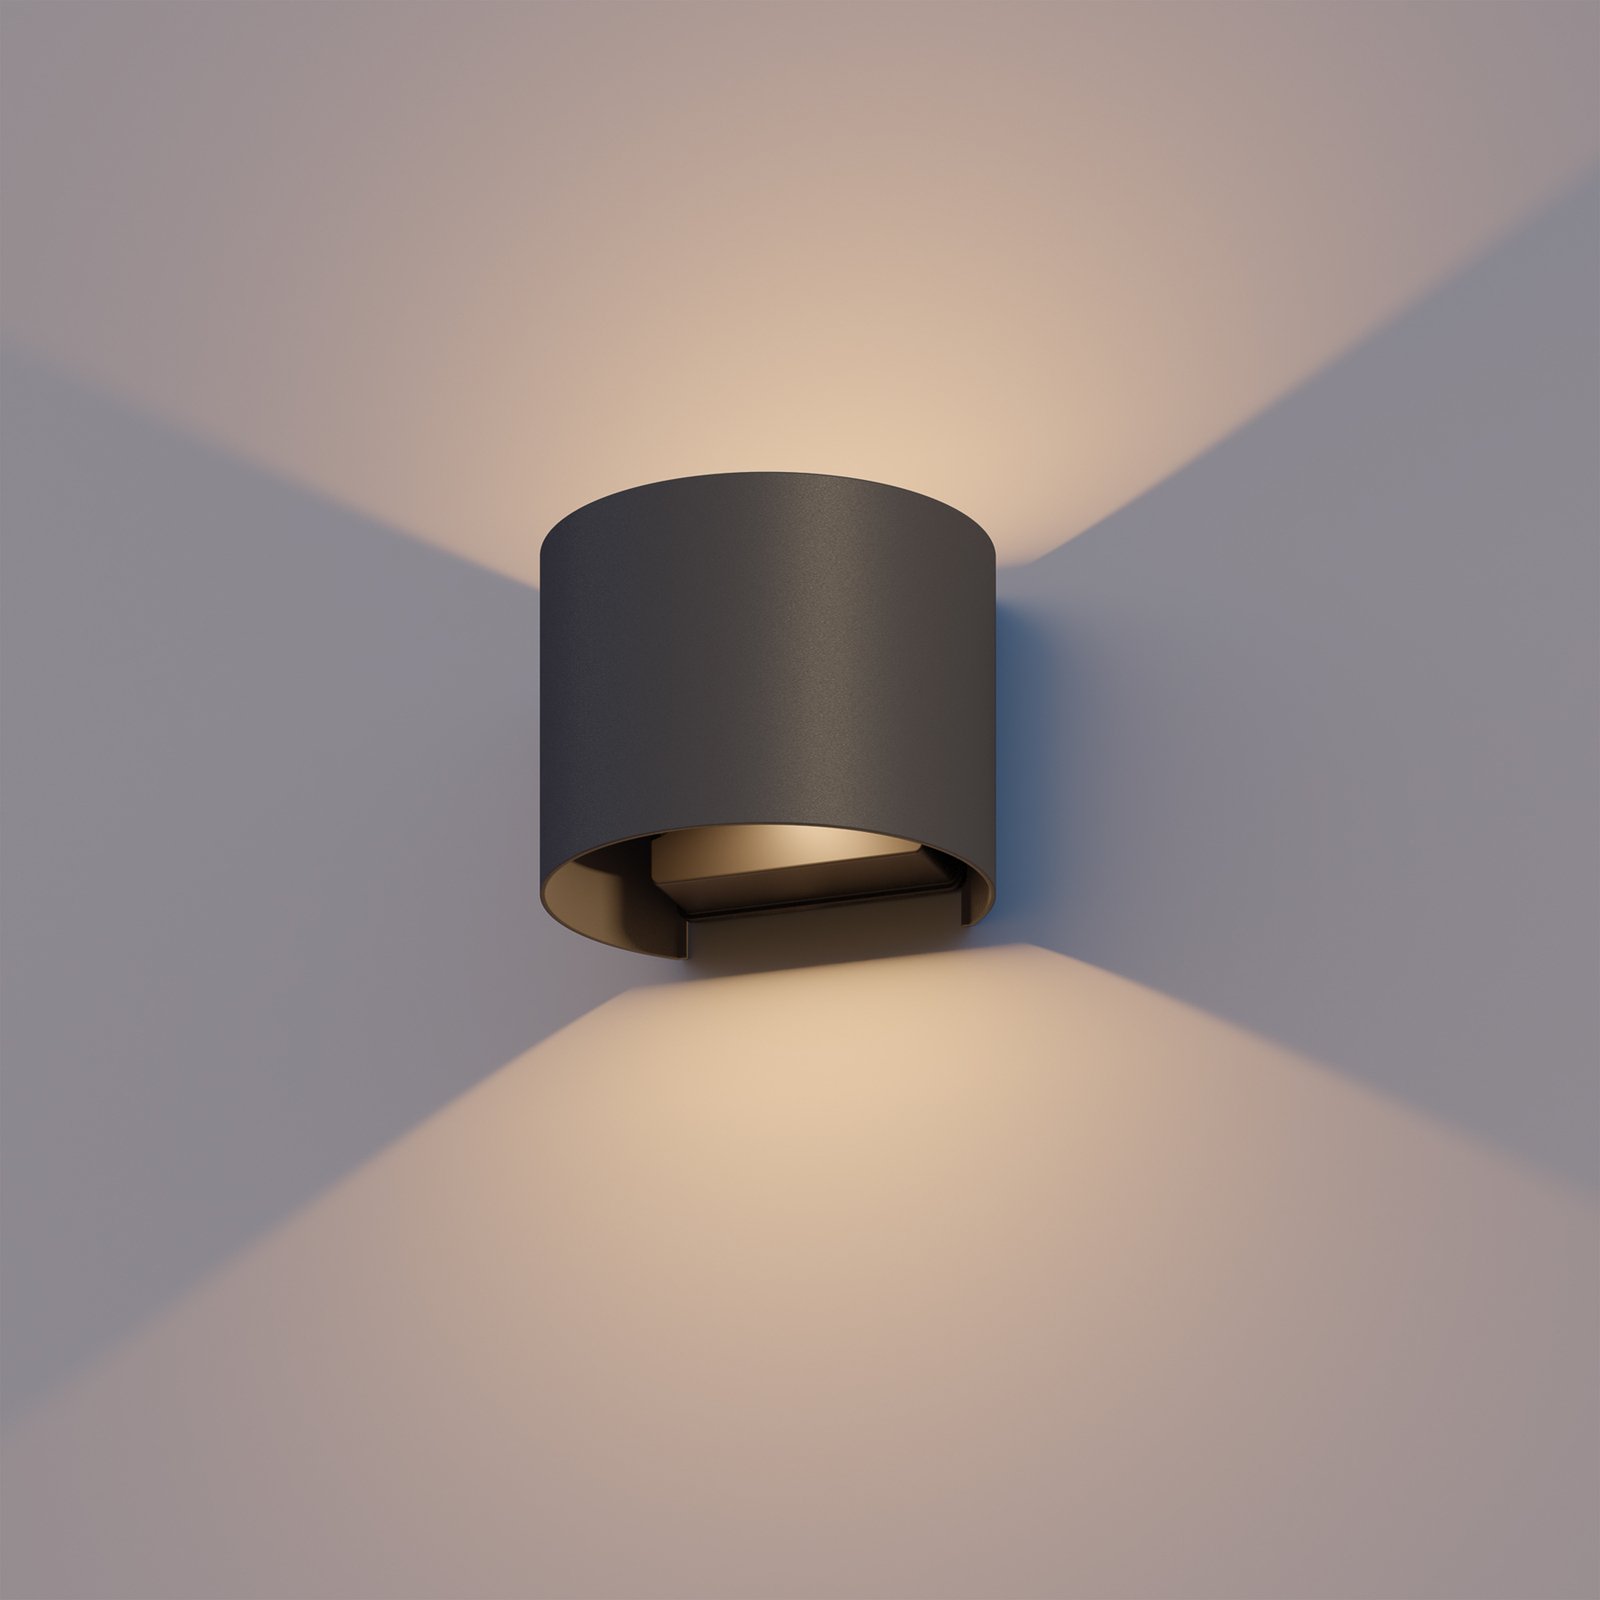 Venkovní nástěnné svítidlo Calex LED Oval, nahoru/dolů, výška 10 cm, černé